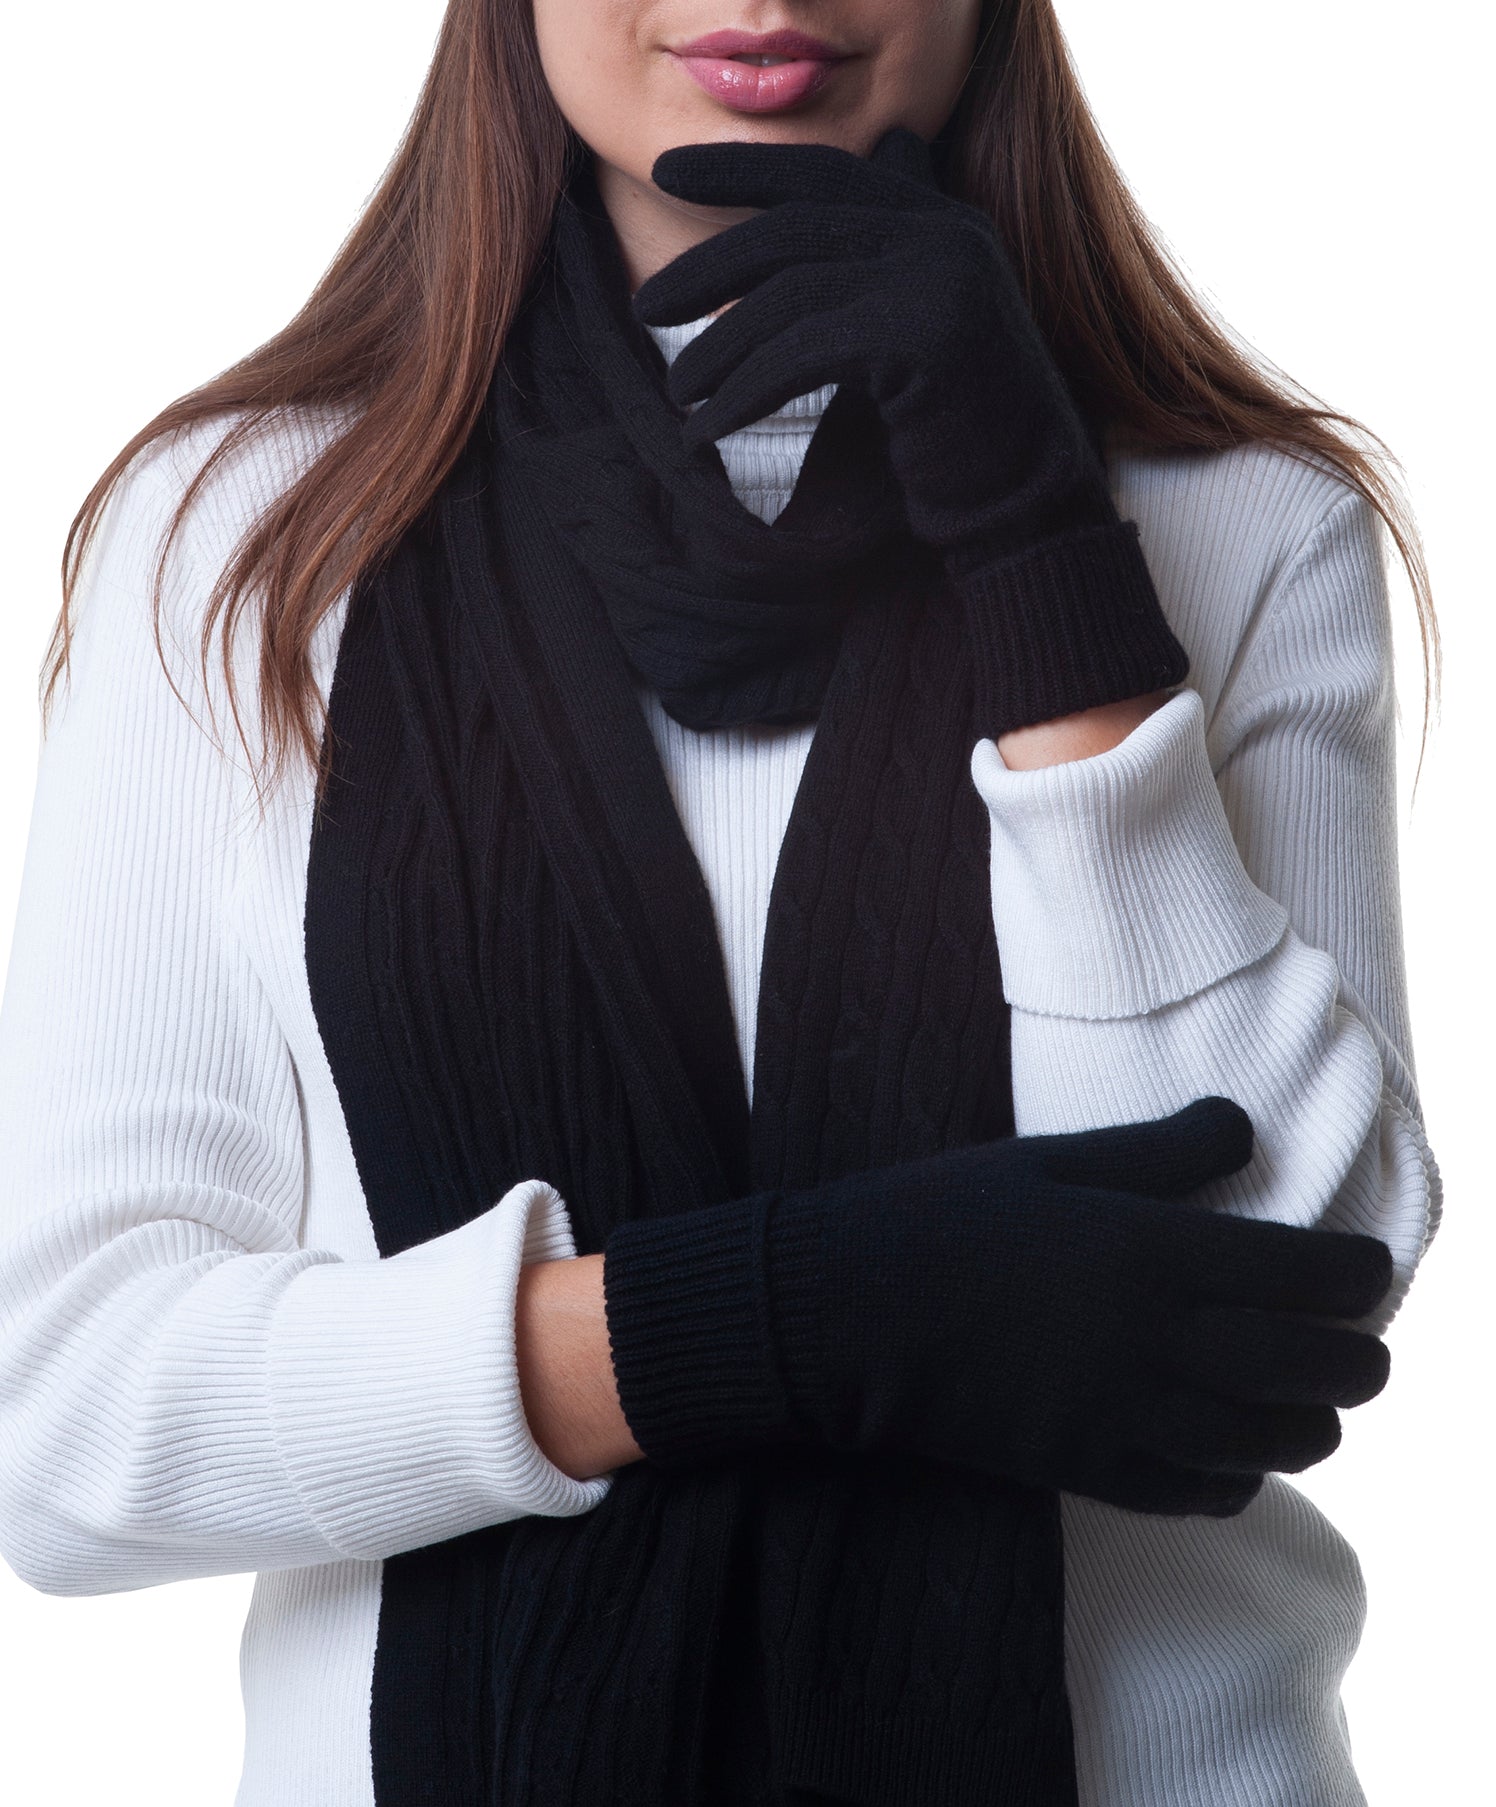 Cashmere fingerless gloves for women, soft stylish and warm cashmere  fingerless mittens, gift for her